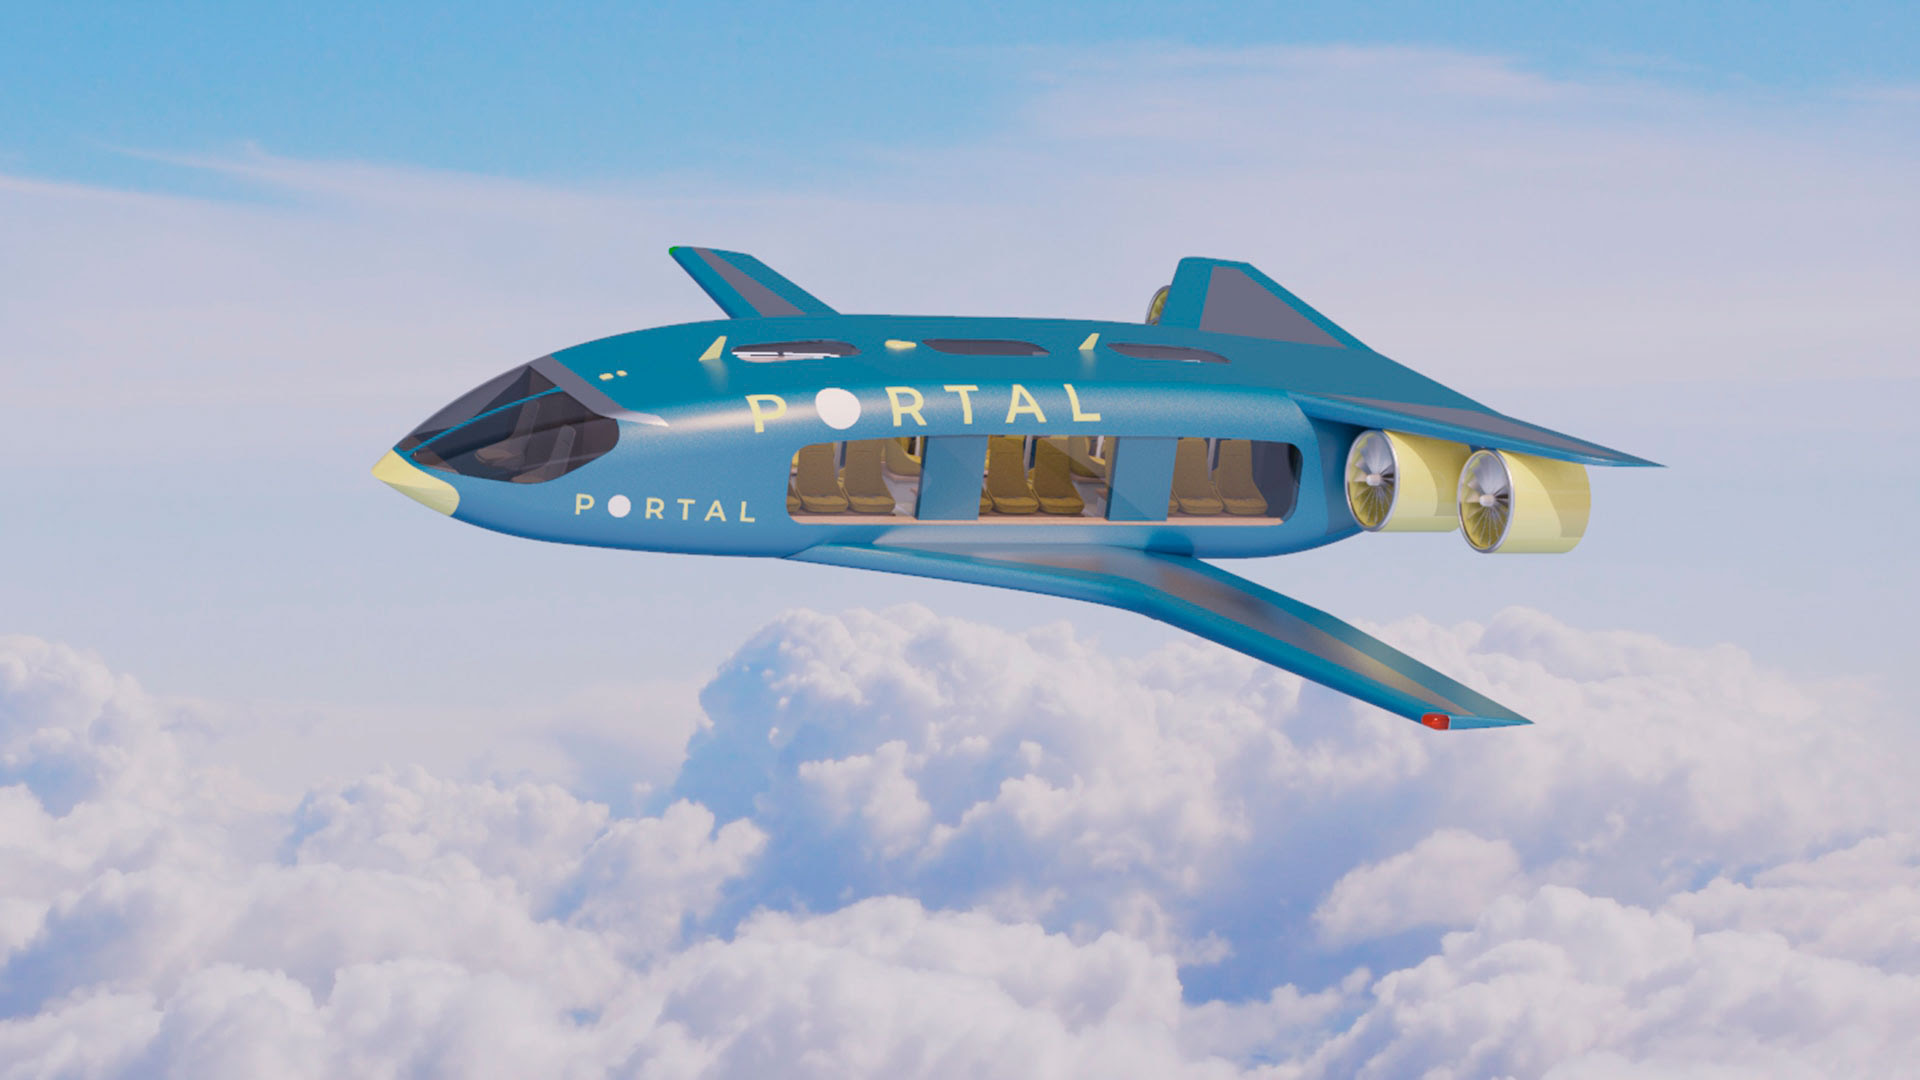 Los aviones Portal serían completamente eléctricos y se emplearían para trayectos de hasta 1.600 kilómetros